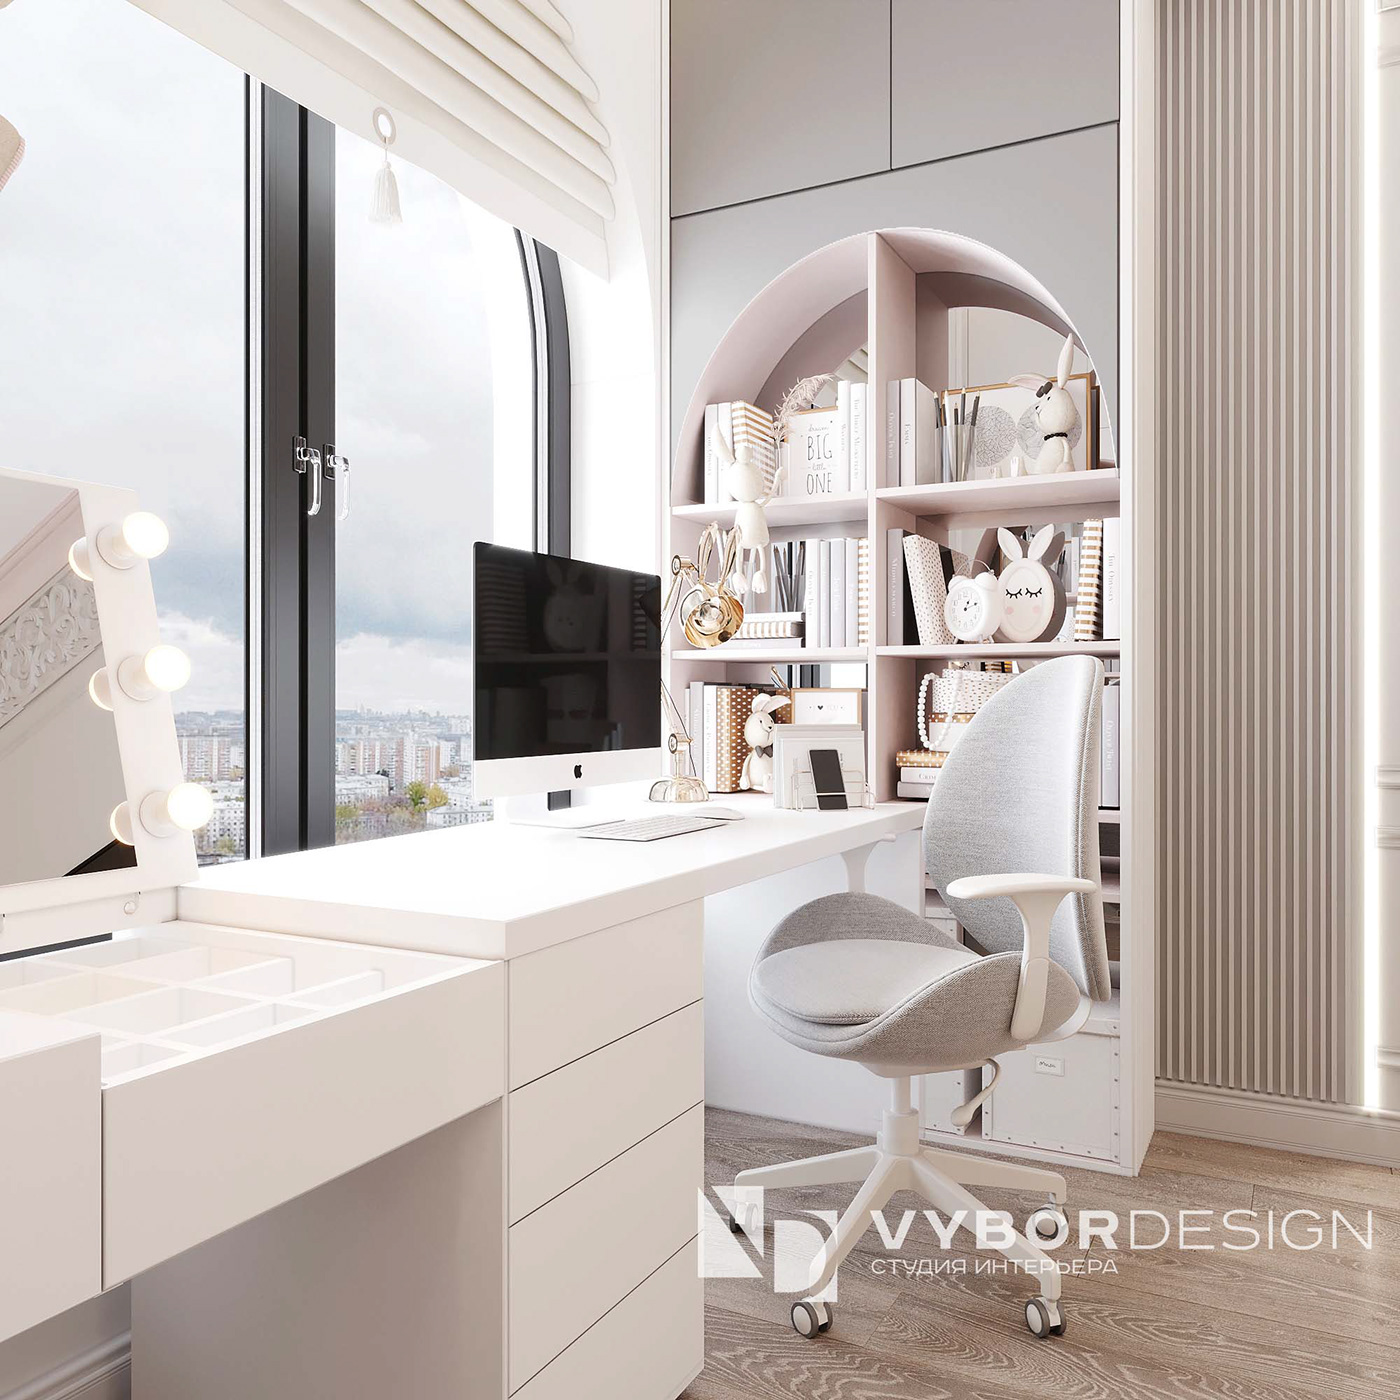 Interior визуализация гостиная   дизайн дизайн интерьера интерьер Интерьер квартиры кухня